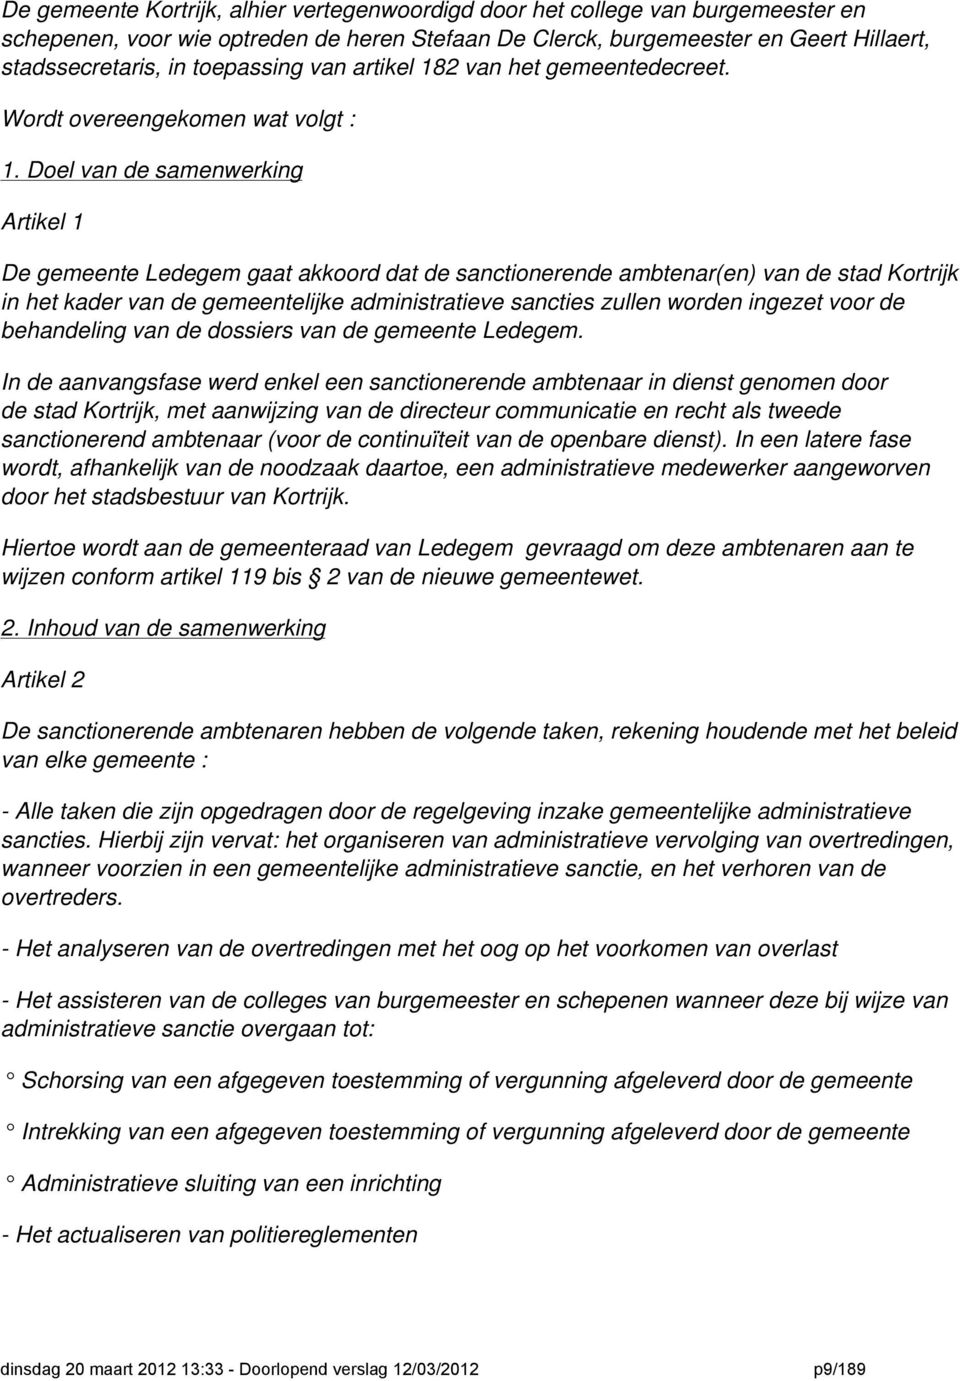 Doel van de samenwerking Artikel 1 De gemeente Ledegem gaat akkoord dat de sanctionerende ambtenar(en) van de stad Kortrijk in het kader van de gemeentelijke administratieve sancties zullen worden